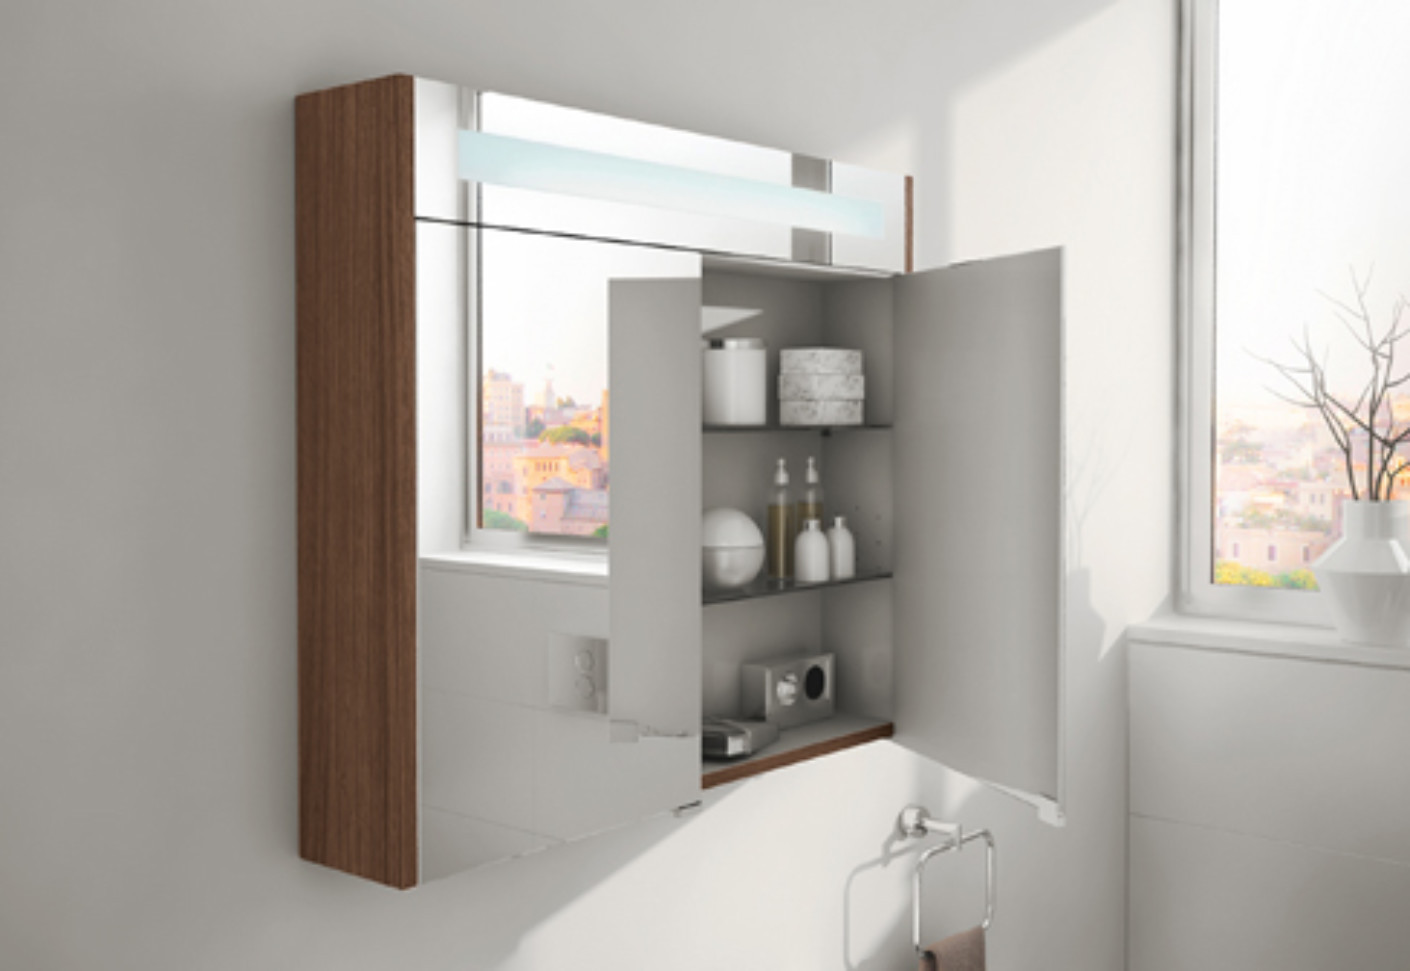 Mirror Cabinet For Bathroom
 S20 mirror cabinet by VitrA Bathroom